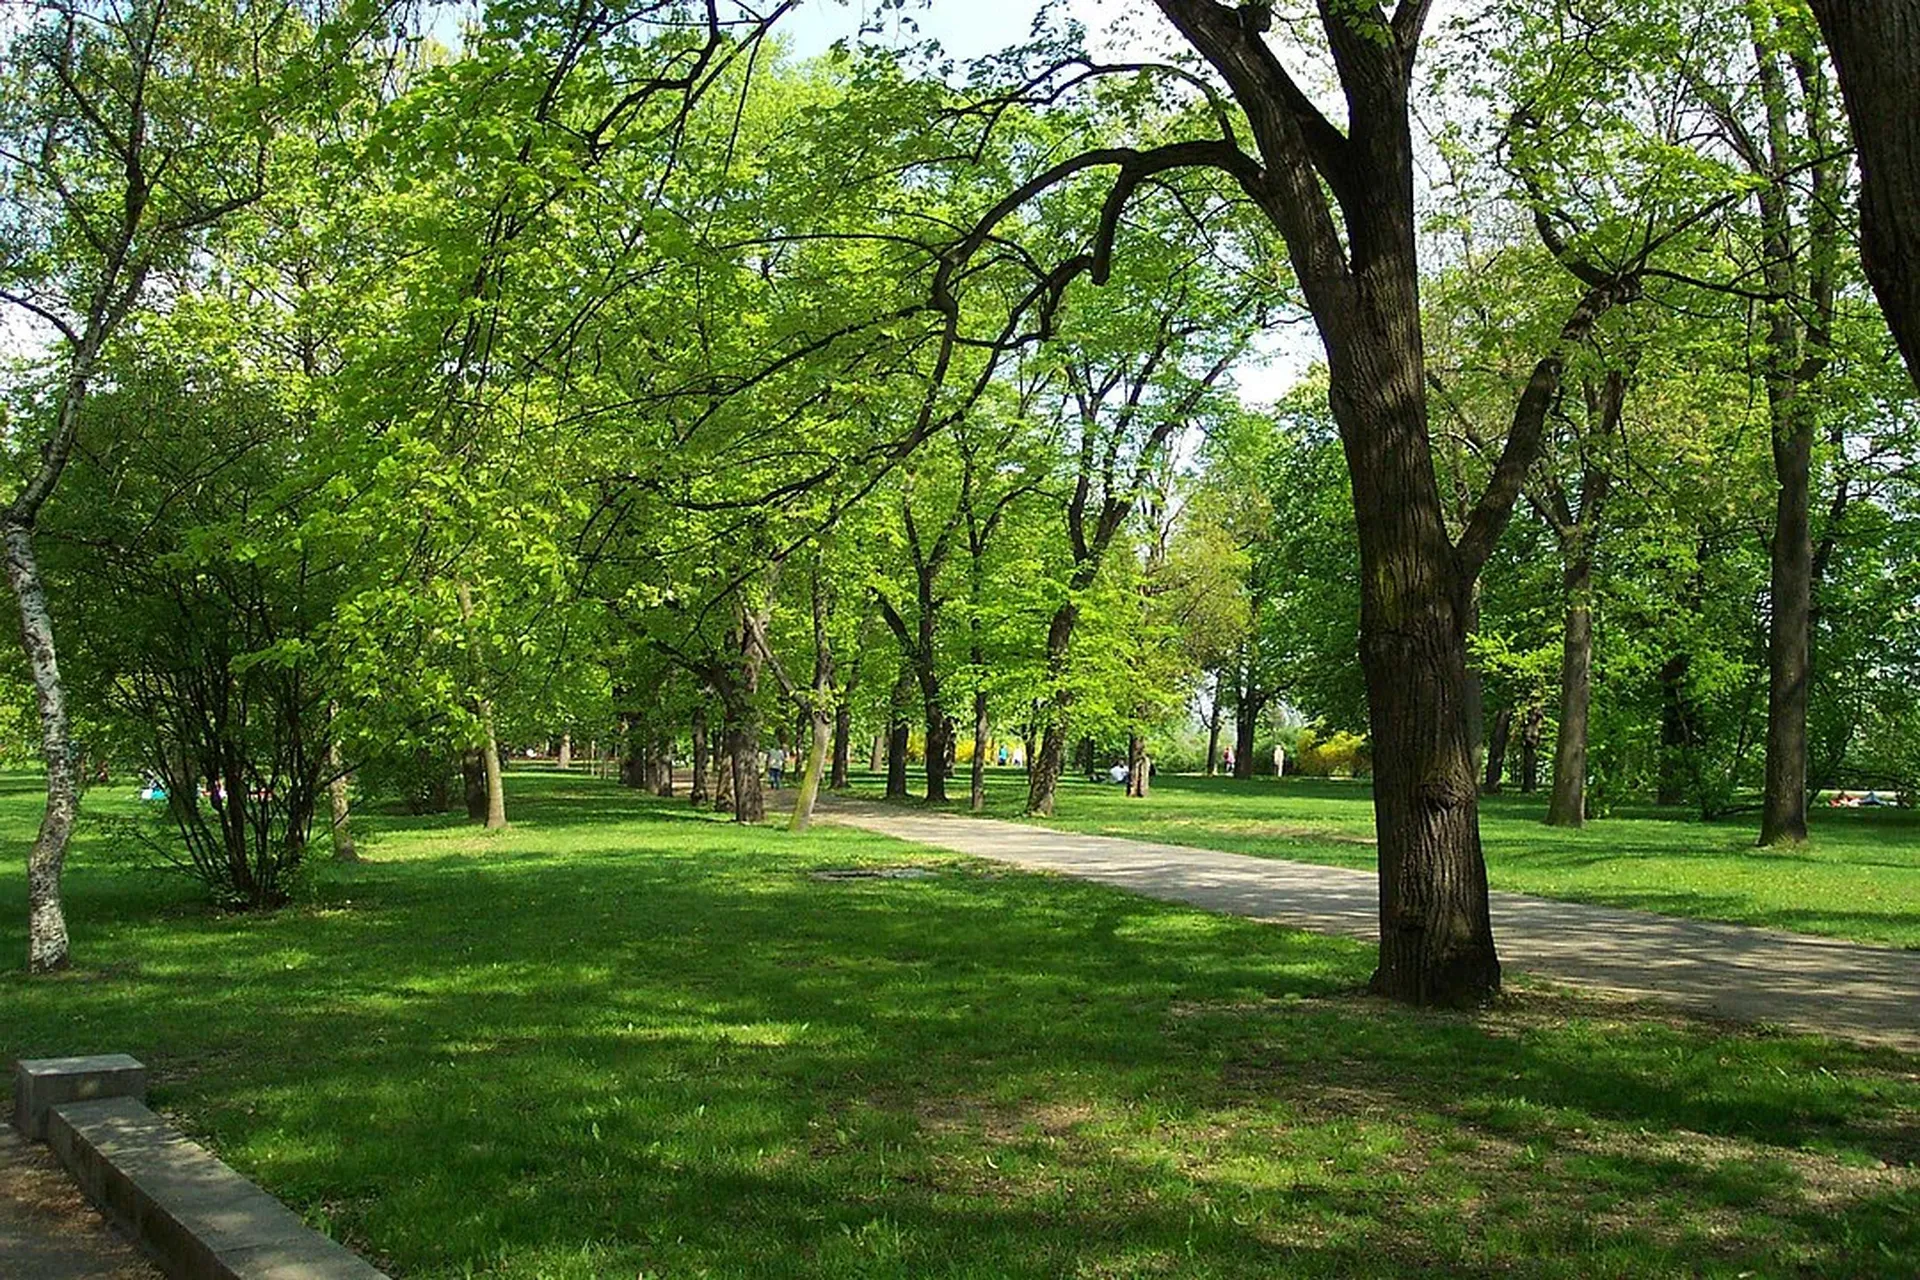 Letna Park